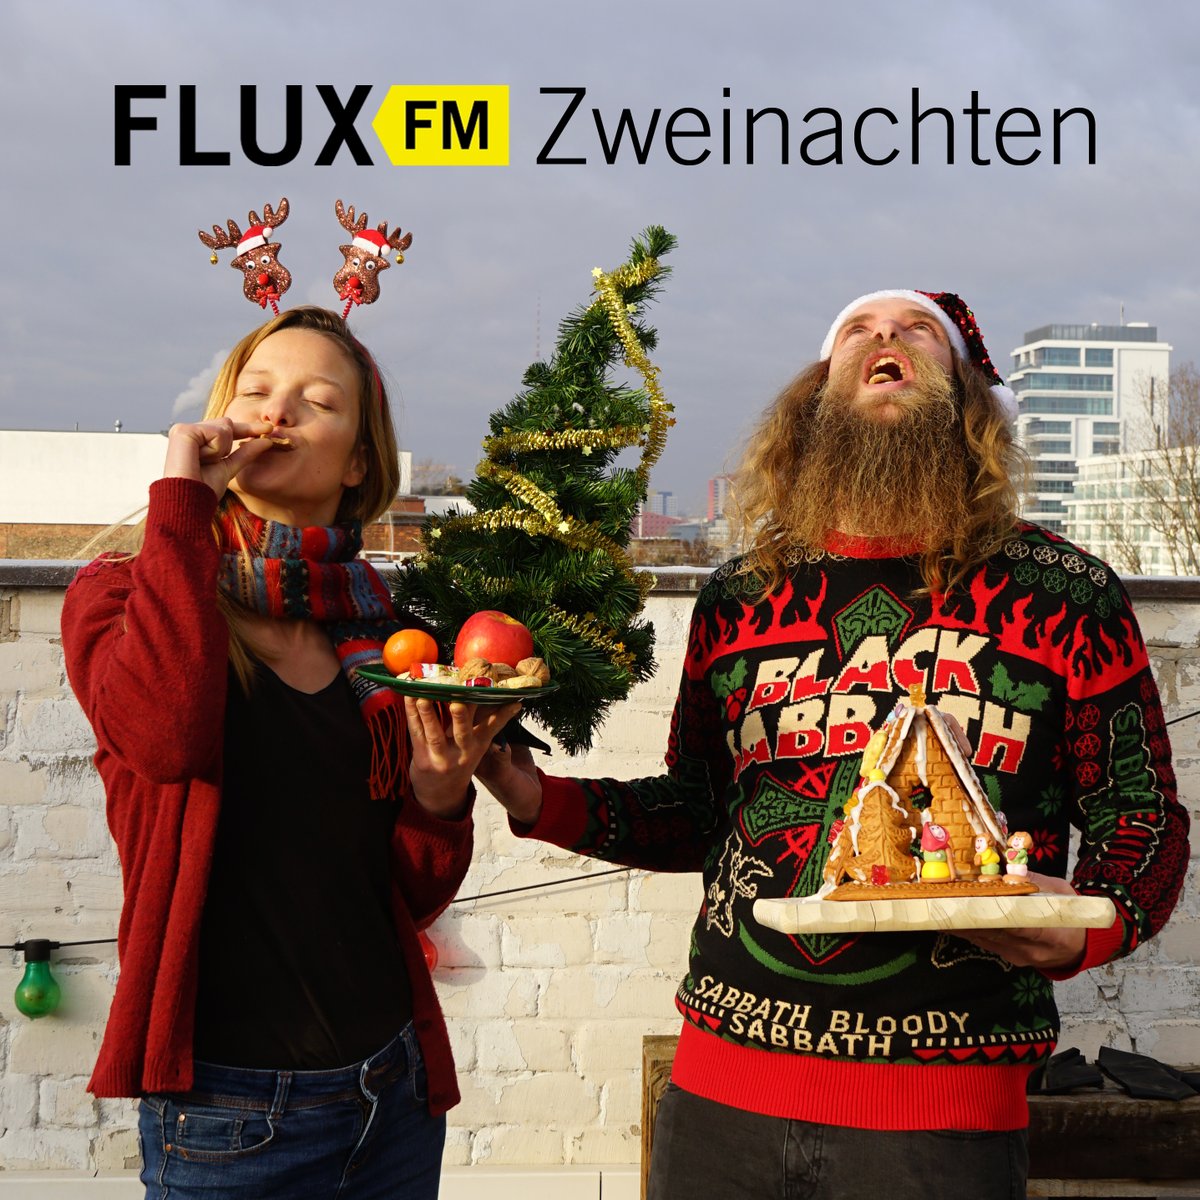 Als große Weihnachtsfans halten Filli Montag und Martin Gertz am Heiligabend jede Menge Besinnlichkeit und Weihnachtsstimmung für euch bereit - nebst bester und stimmungsvollster Musik versteht sich! Von 14 bis 18 Uhr feiern die beiden mit euch #FluxFMZweinachten.